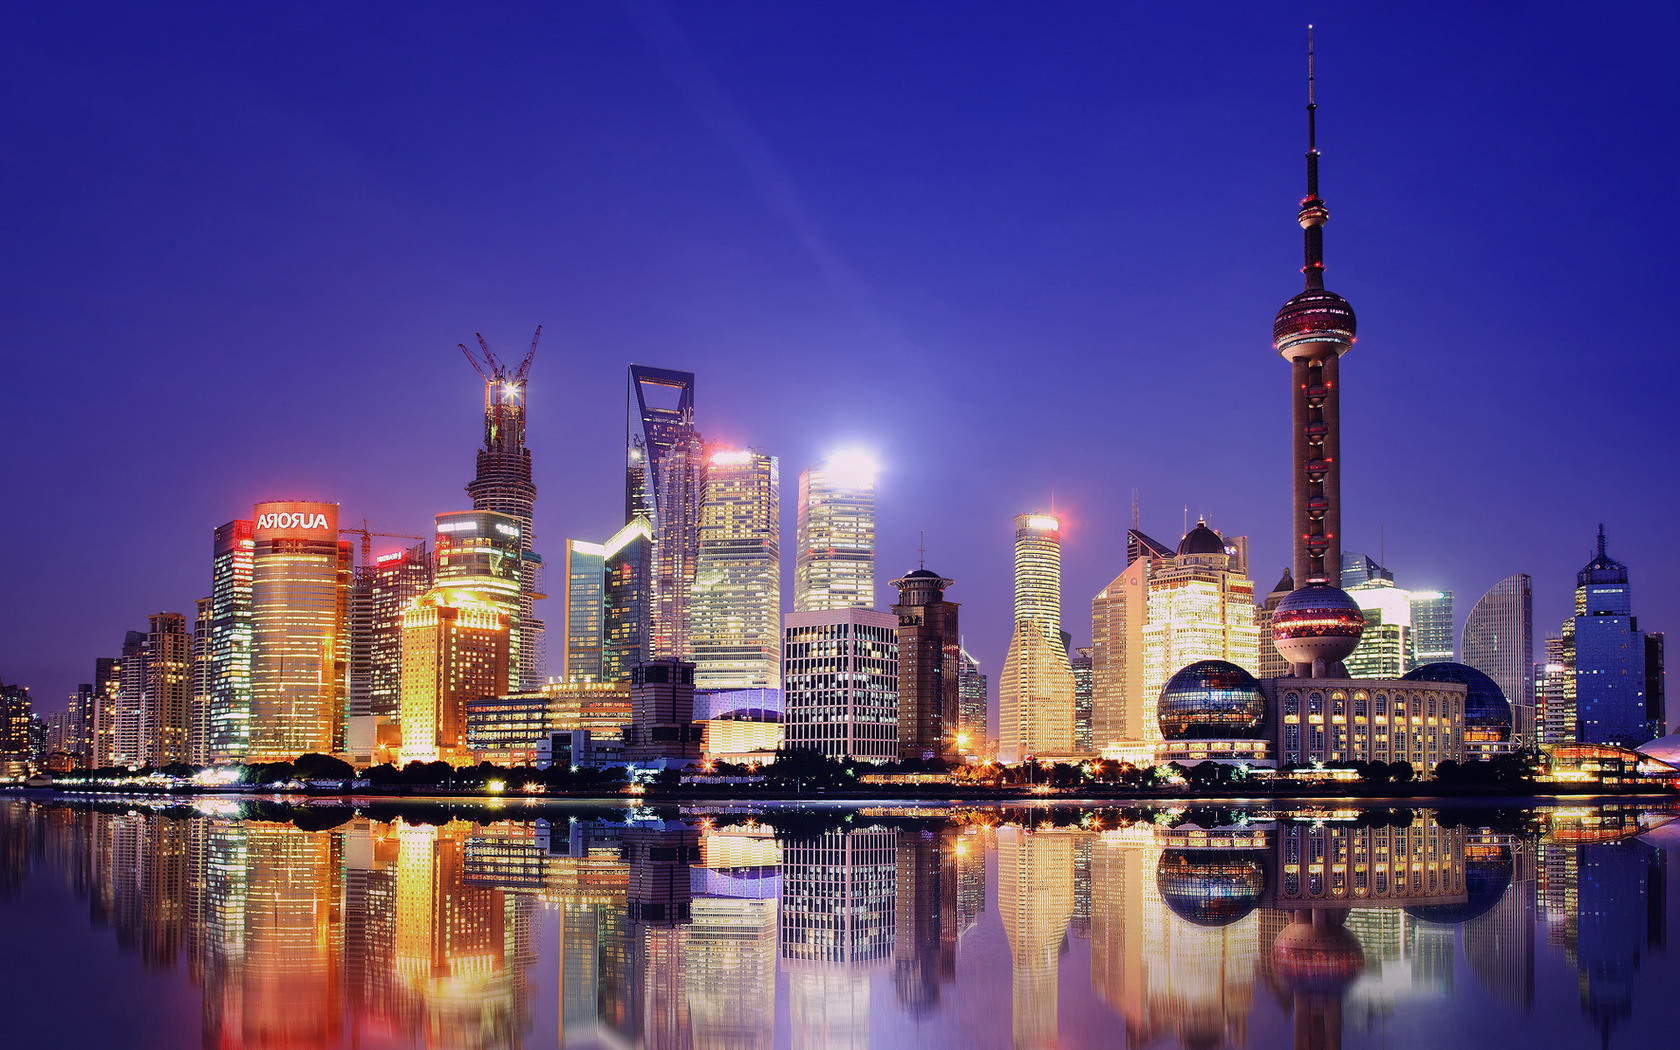 Du lịch Trung Quốc chiêm ngưỡng 10 thành phố đẹp nhất về đêm - ChuduInfo